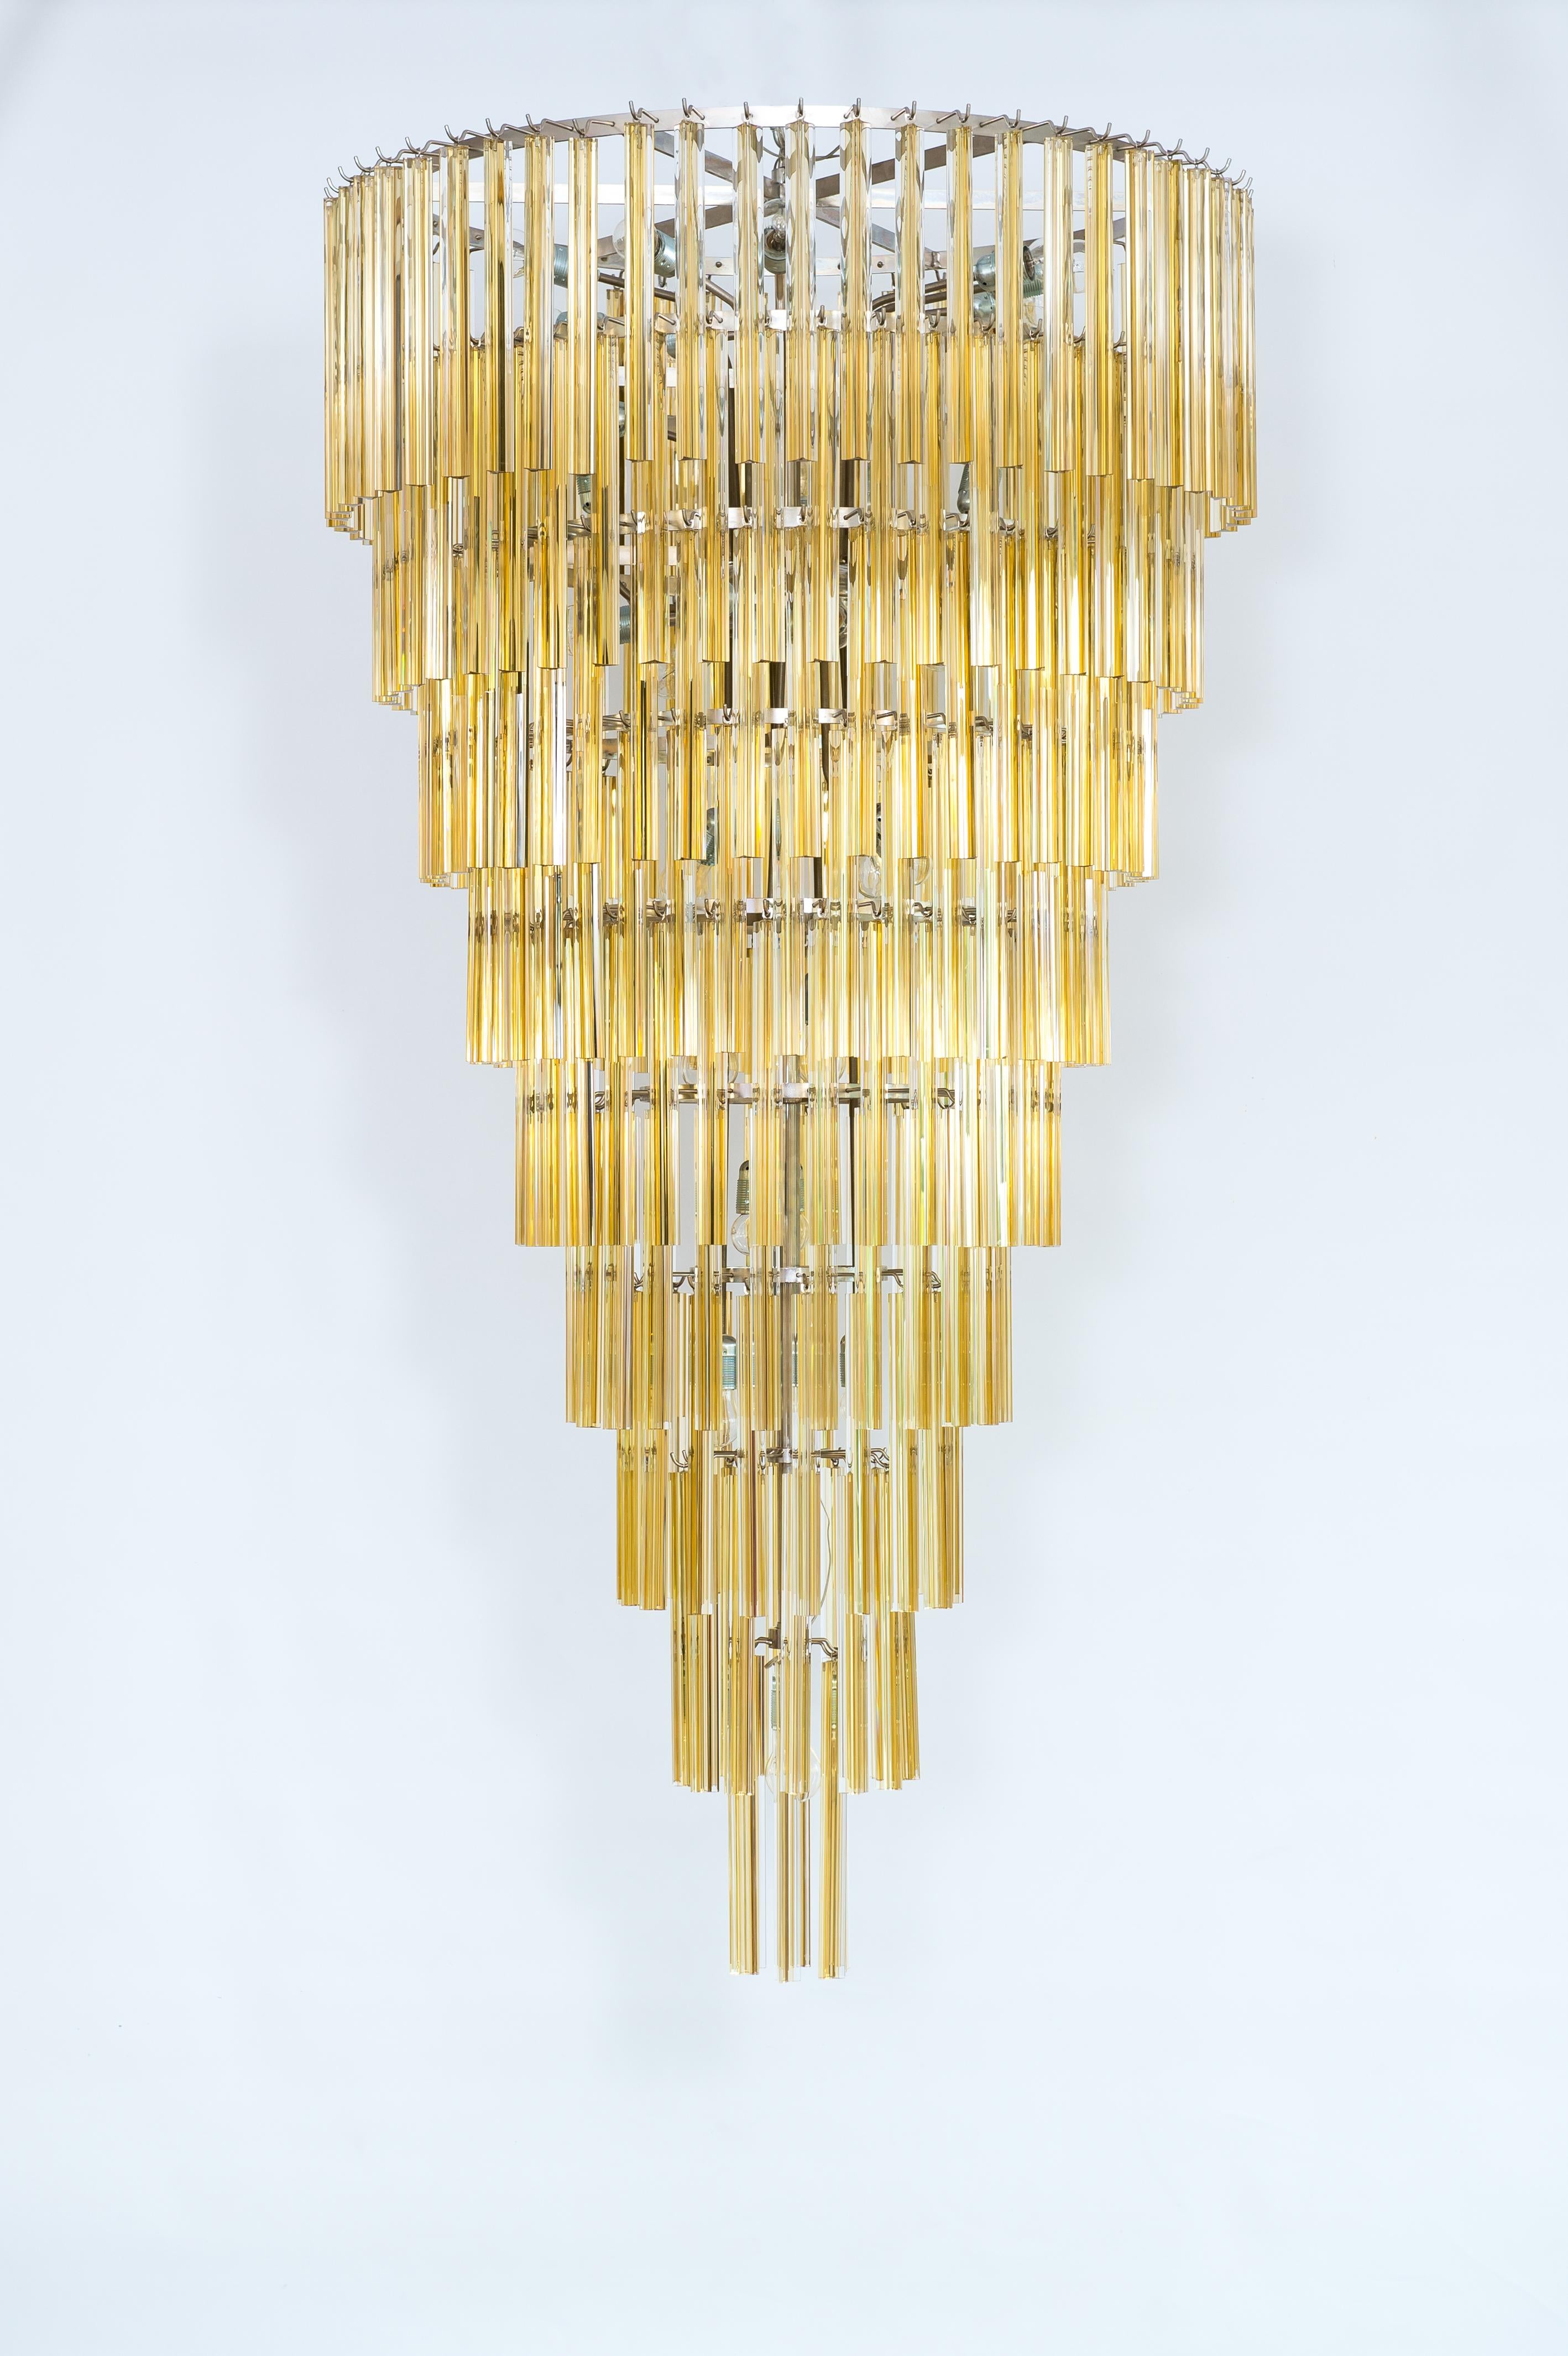 Zeitgenössischer Kegel-Kronleuchter aus Bernstein-Muranoglas, hergestellt in Italien
Dieser erstaunliche Kronleuchter ist ein Meisterwerk der venezianischen Kunst. Er besteht aus einer Vielzahl kleiner dreiflächiger, bernsteinfarbener